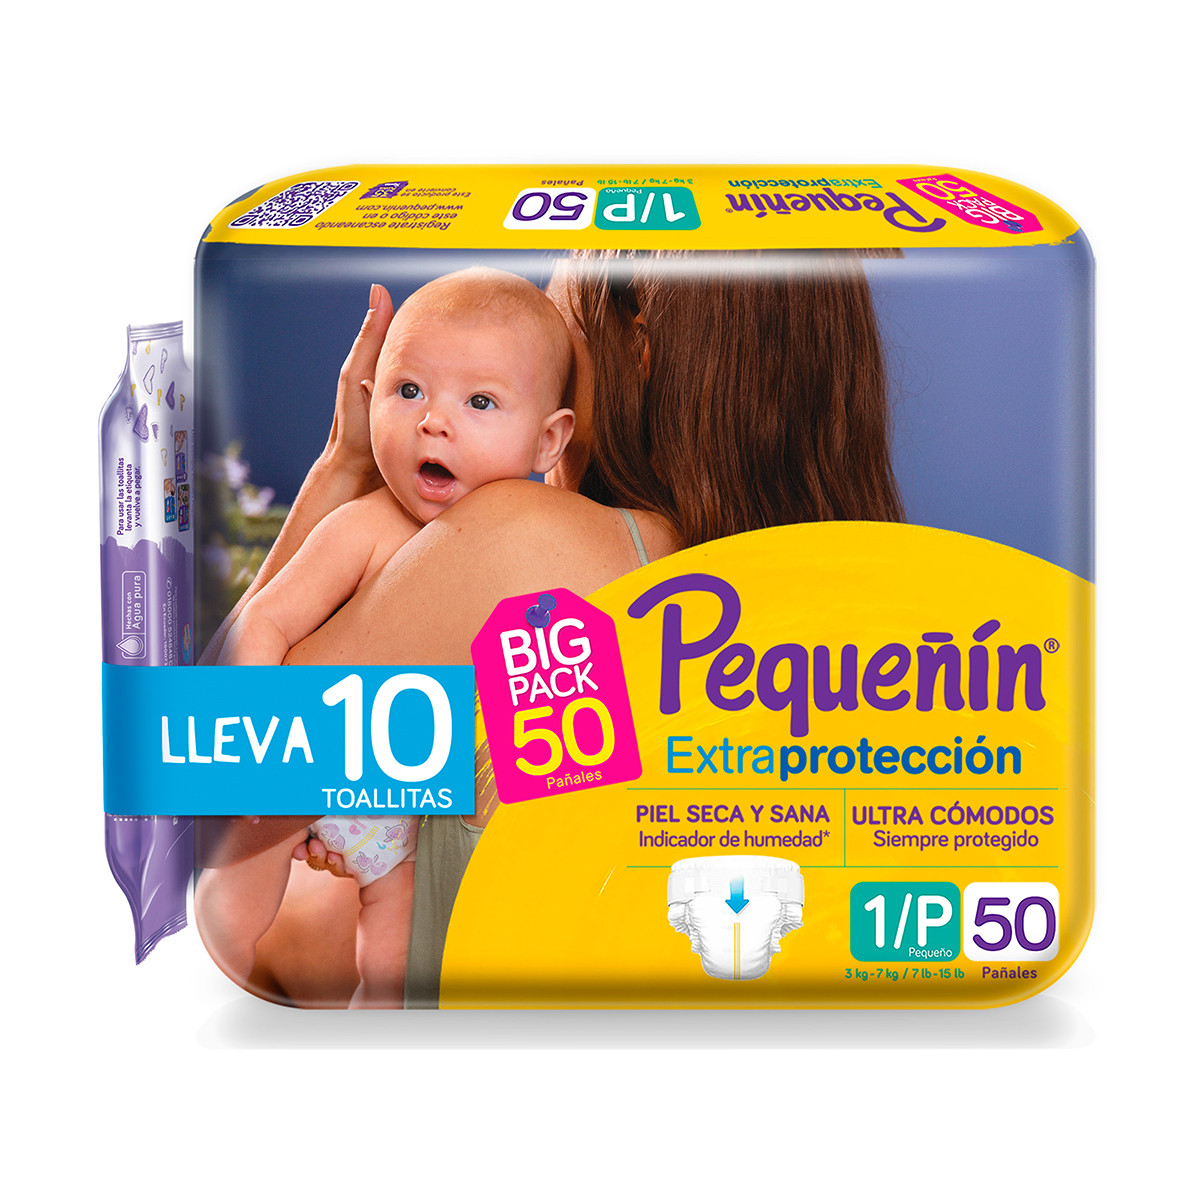 Imagen inactivo Pañales Pequeñín Extraprotección Etapa 1 x 50 und + Toallitas Recién Nacido x 10 und